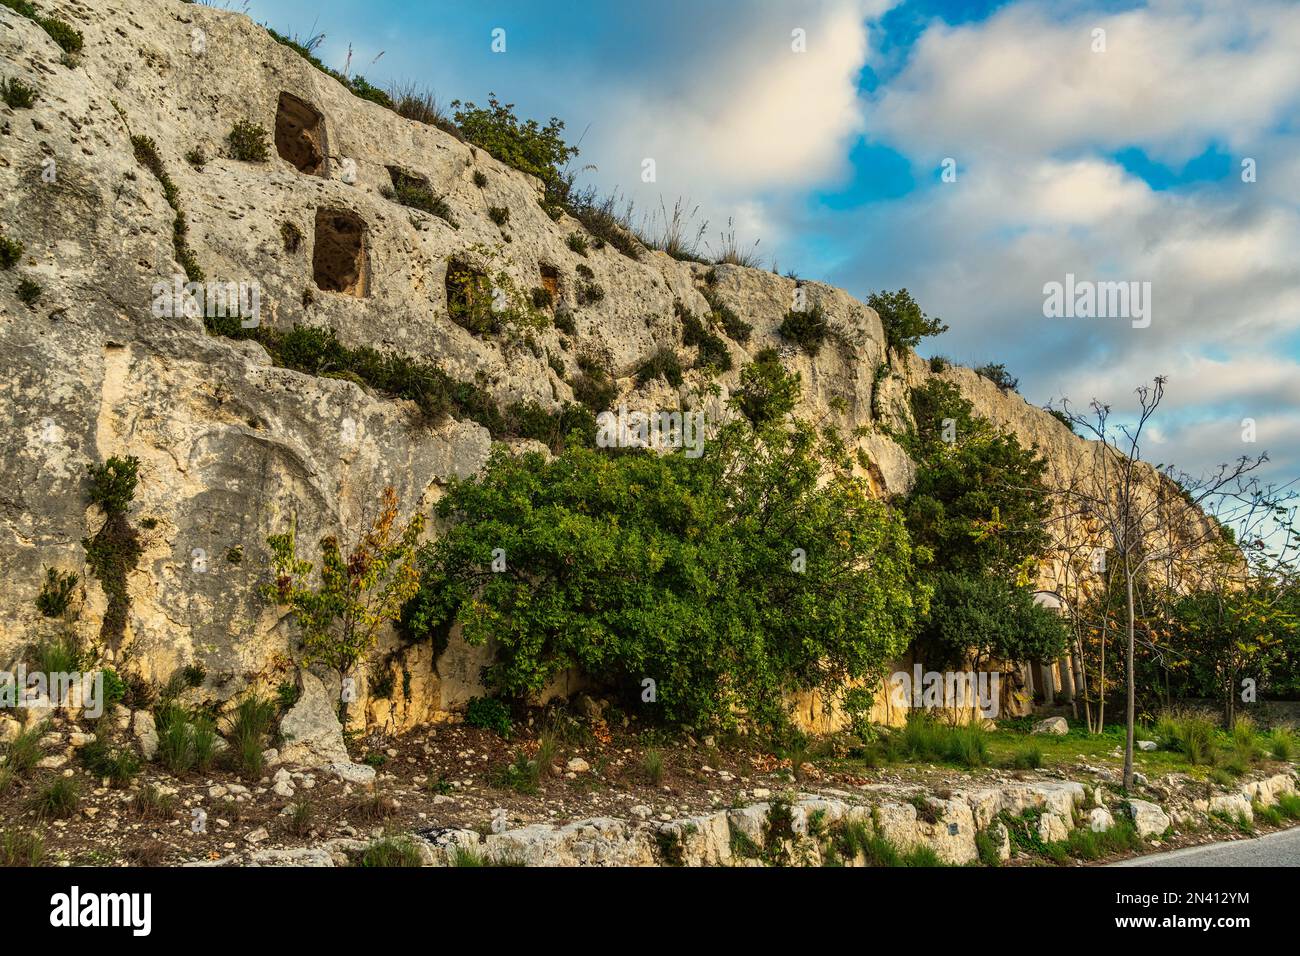 Nécropole de Cassibile, site archéologique avec de nombreuses traces et ruines de la roupie. Avola, province de Syracuse, Sicile, Italie, Europe Banque D'Images